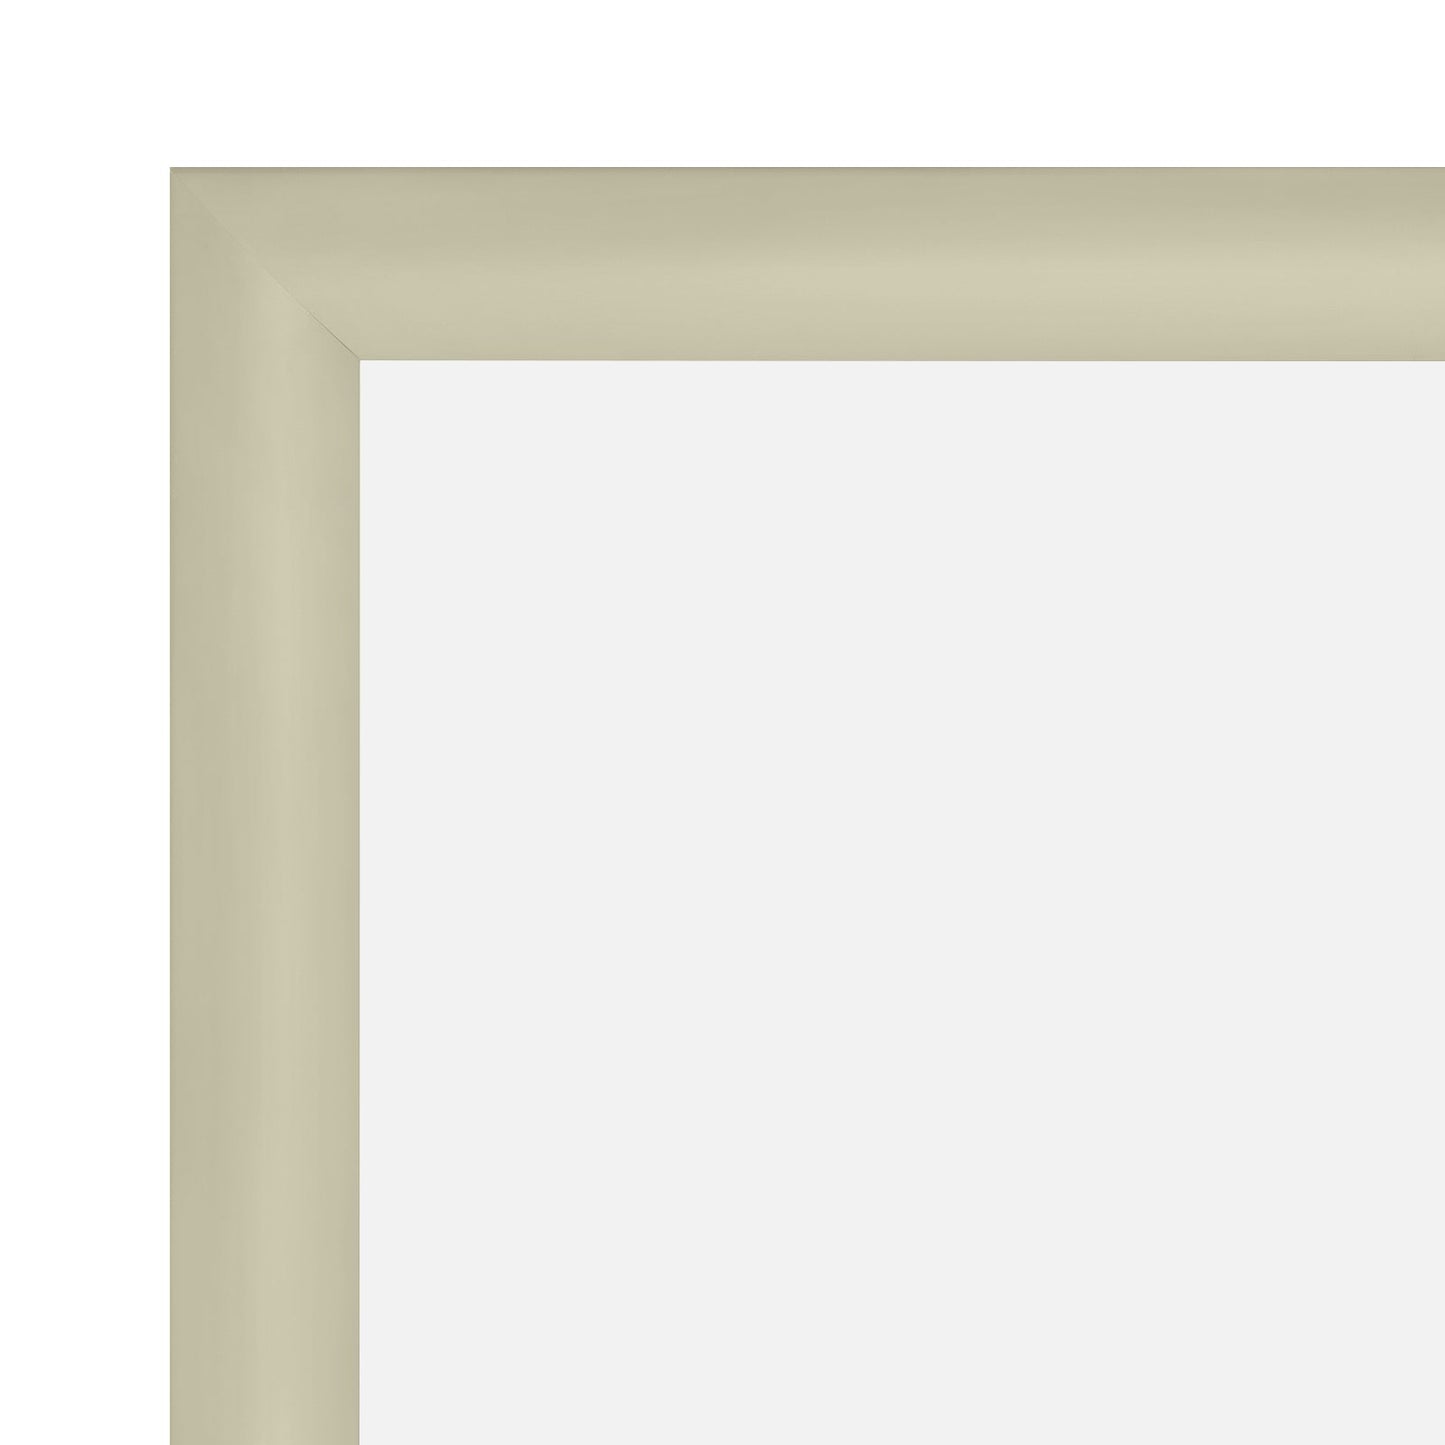 11x17 Cream SnapeZo® Snap Frame - 1.2" Profile